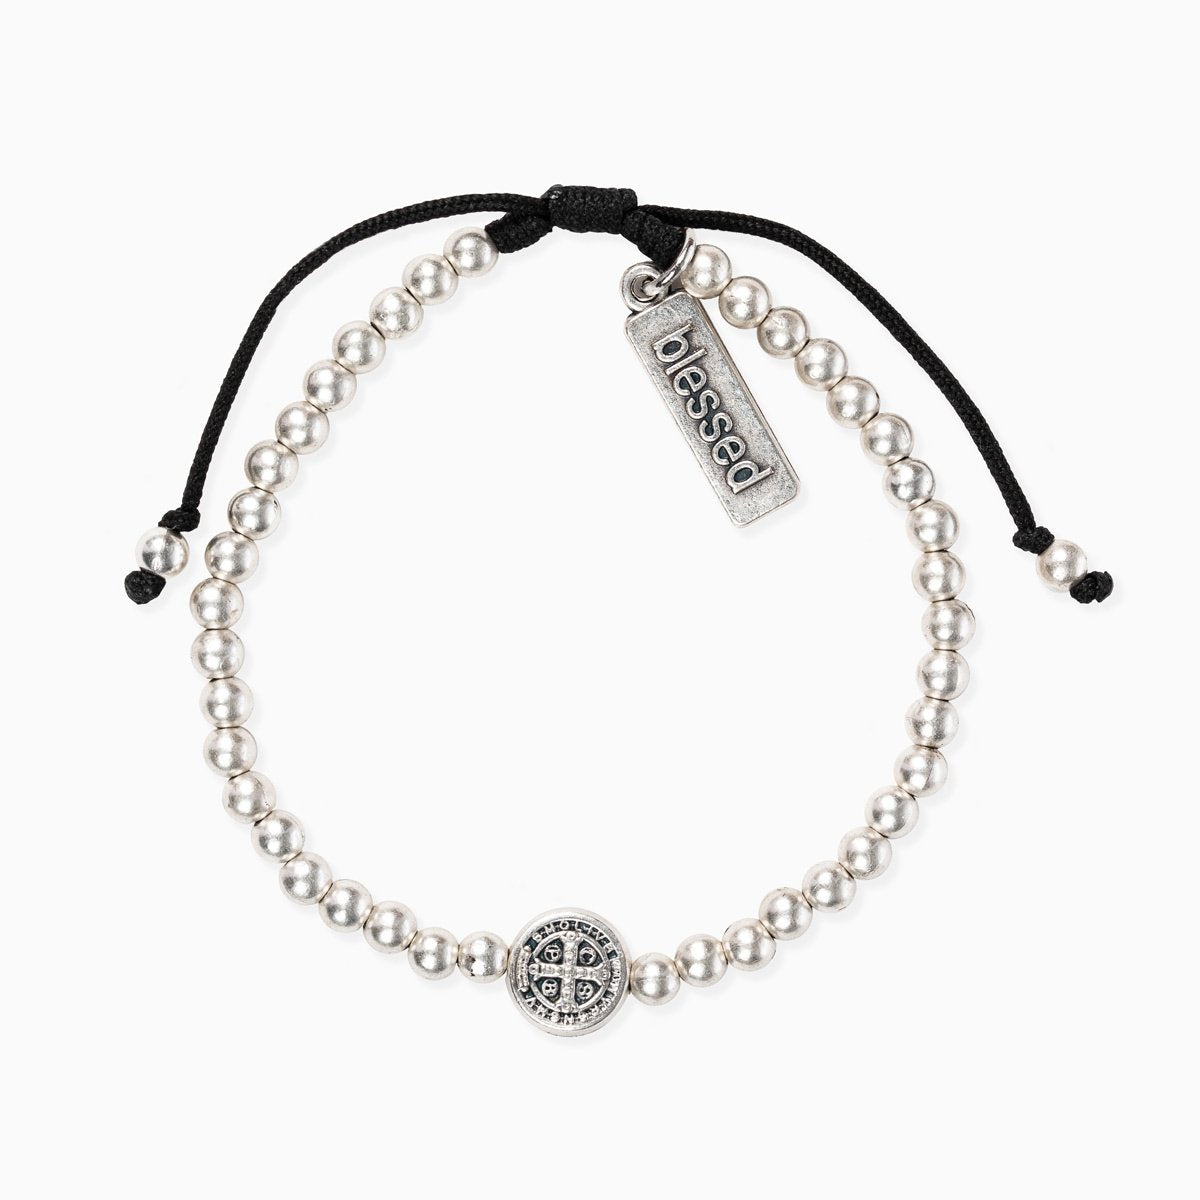 MSMH - Mantra of Love Benedictine Bracelet